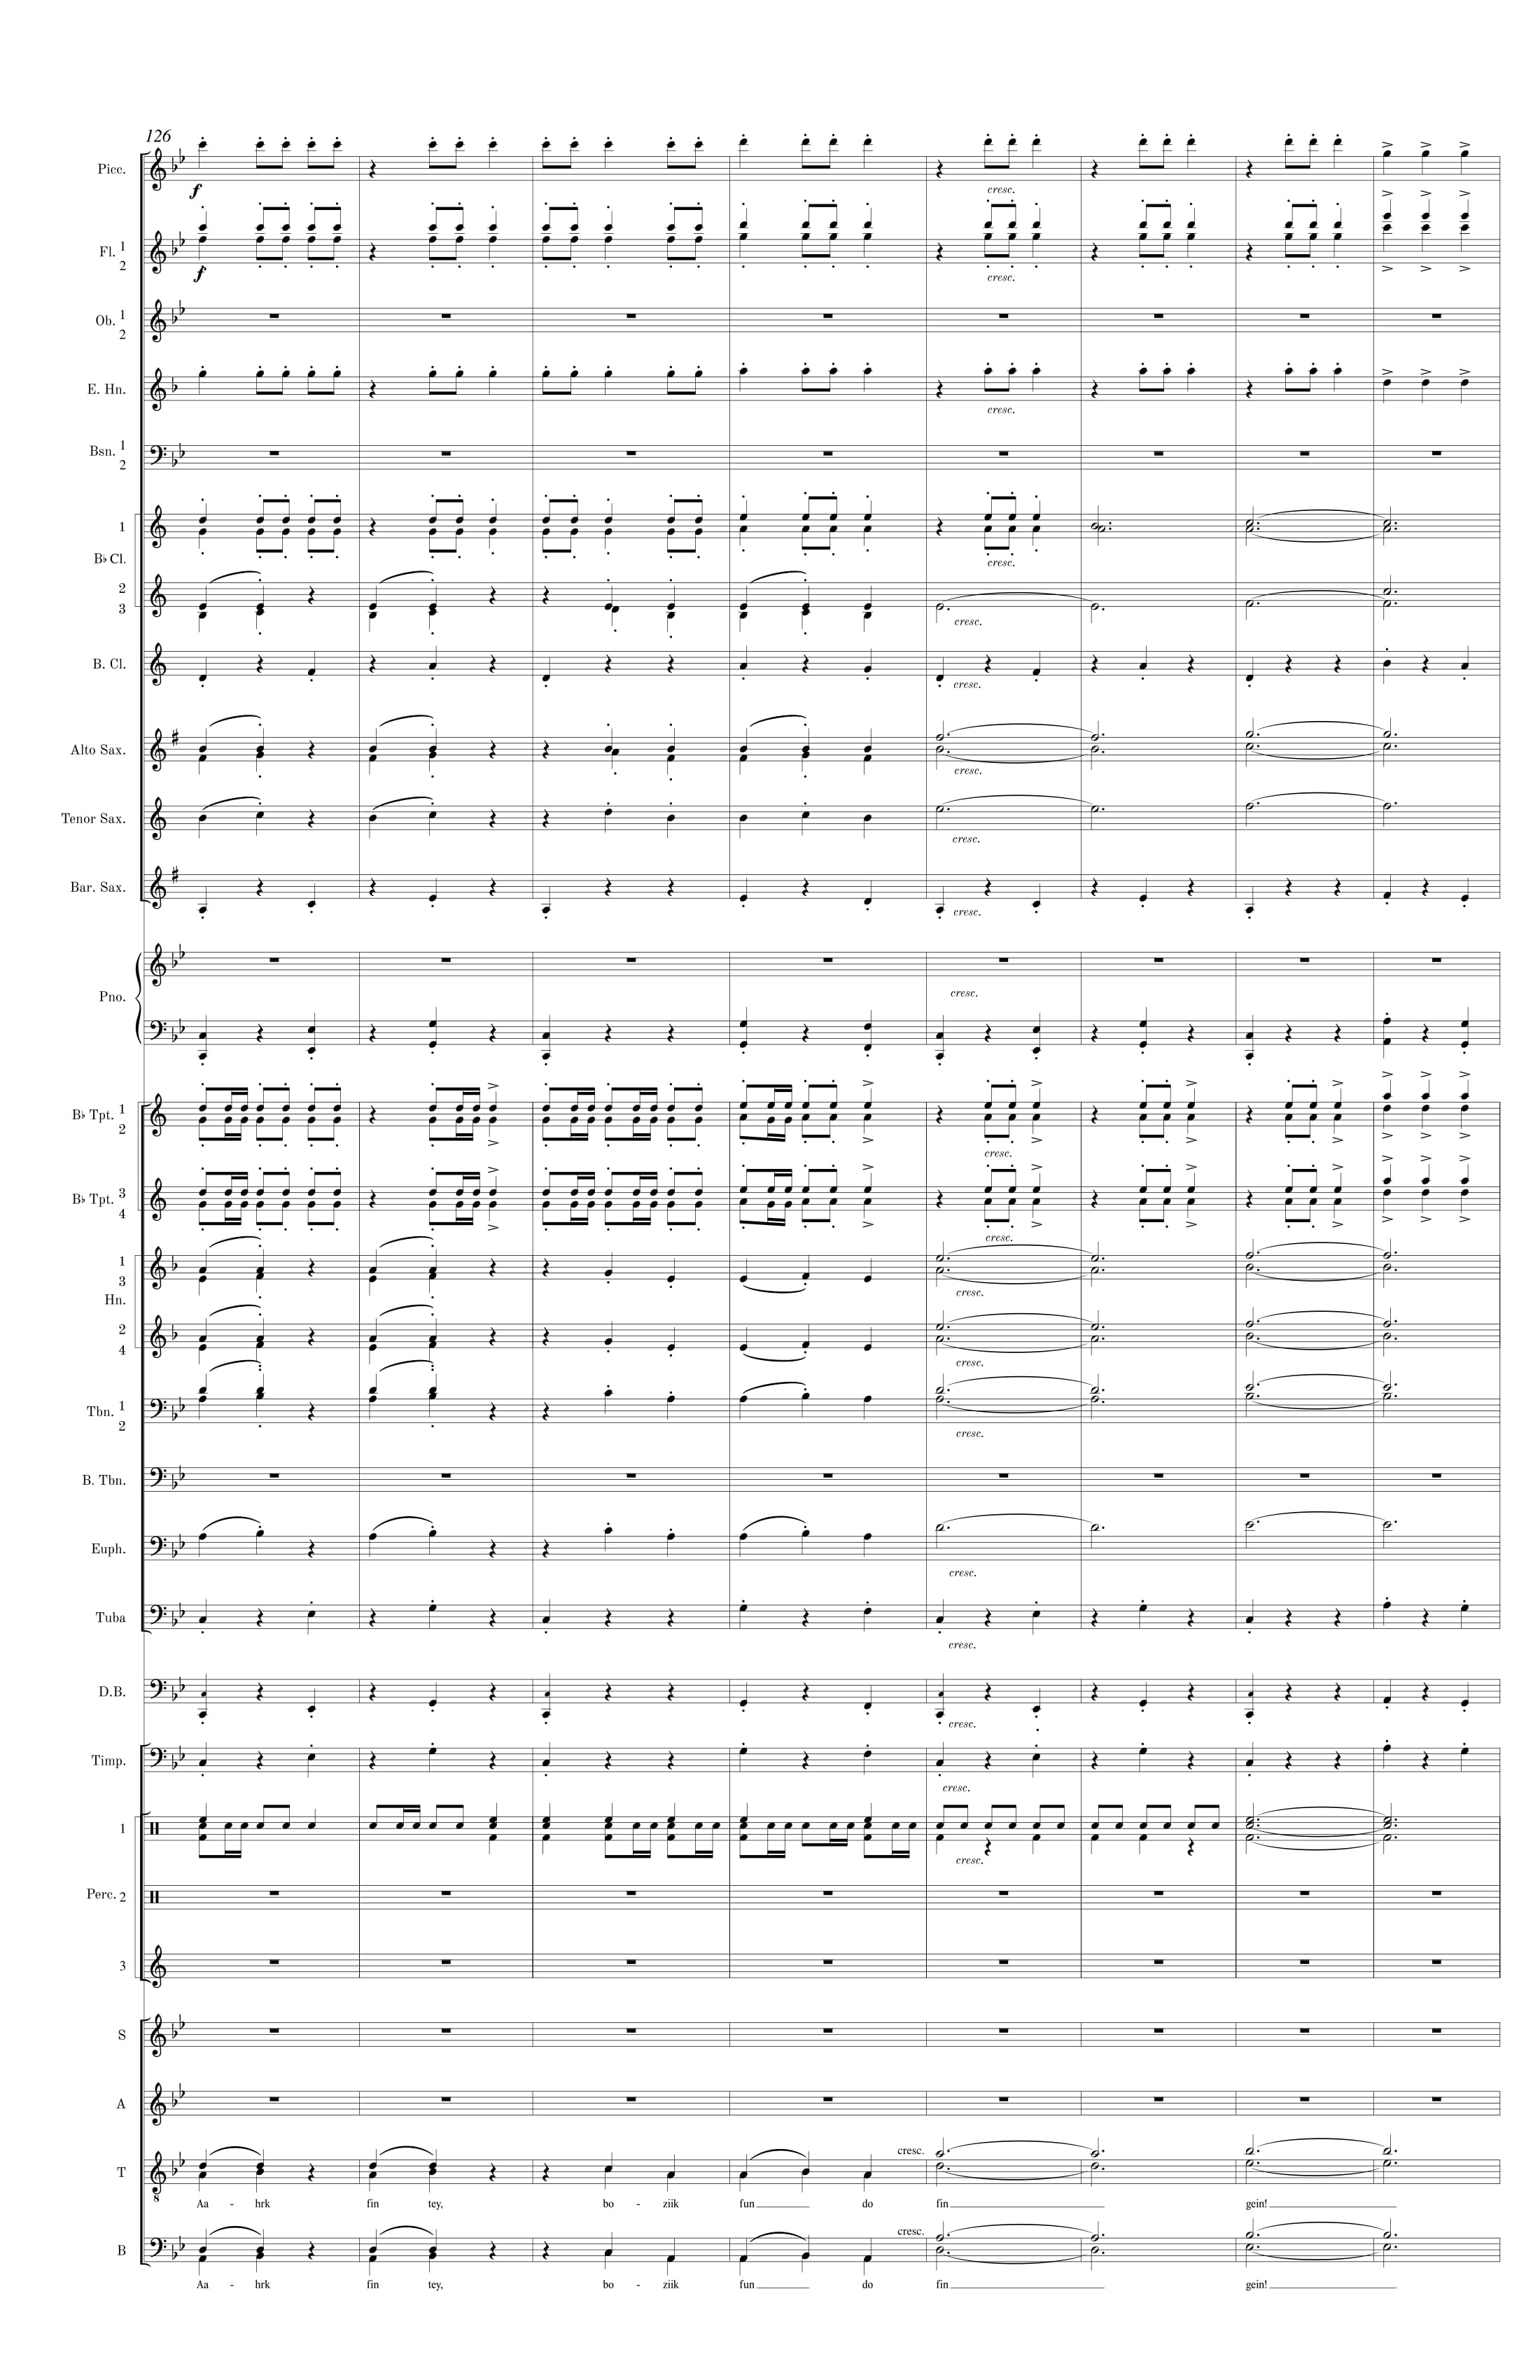 Symphonic Band Score